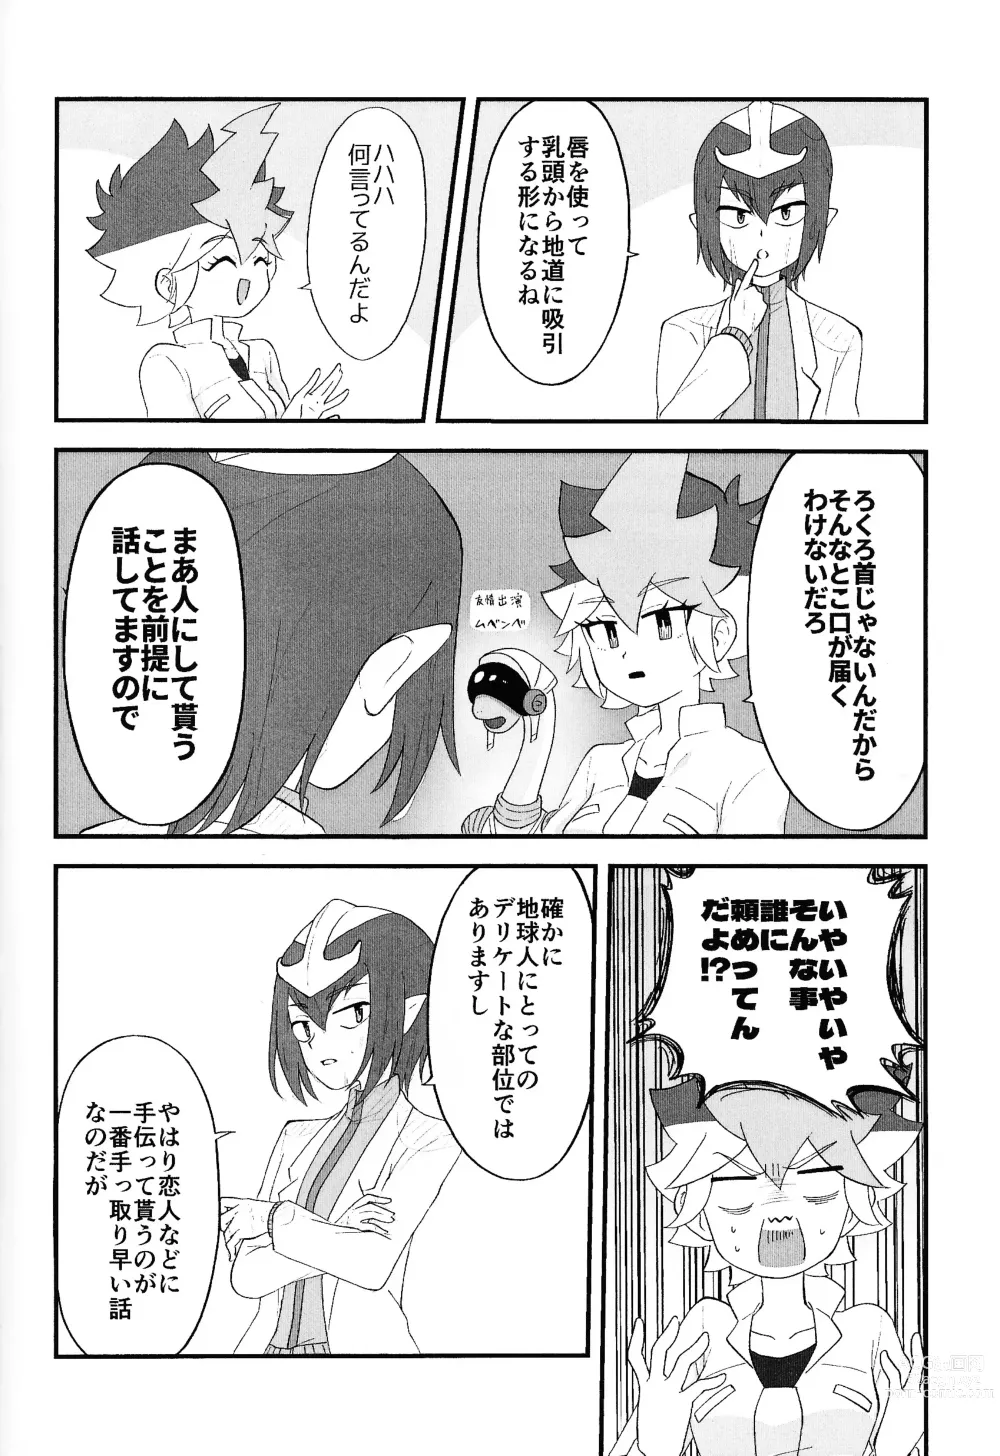 Page 11 of doujinshi Pandoranohako ka kindan no kajitsu ka